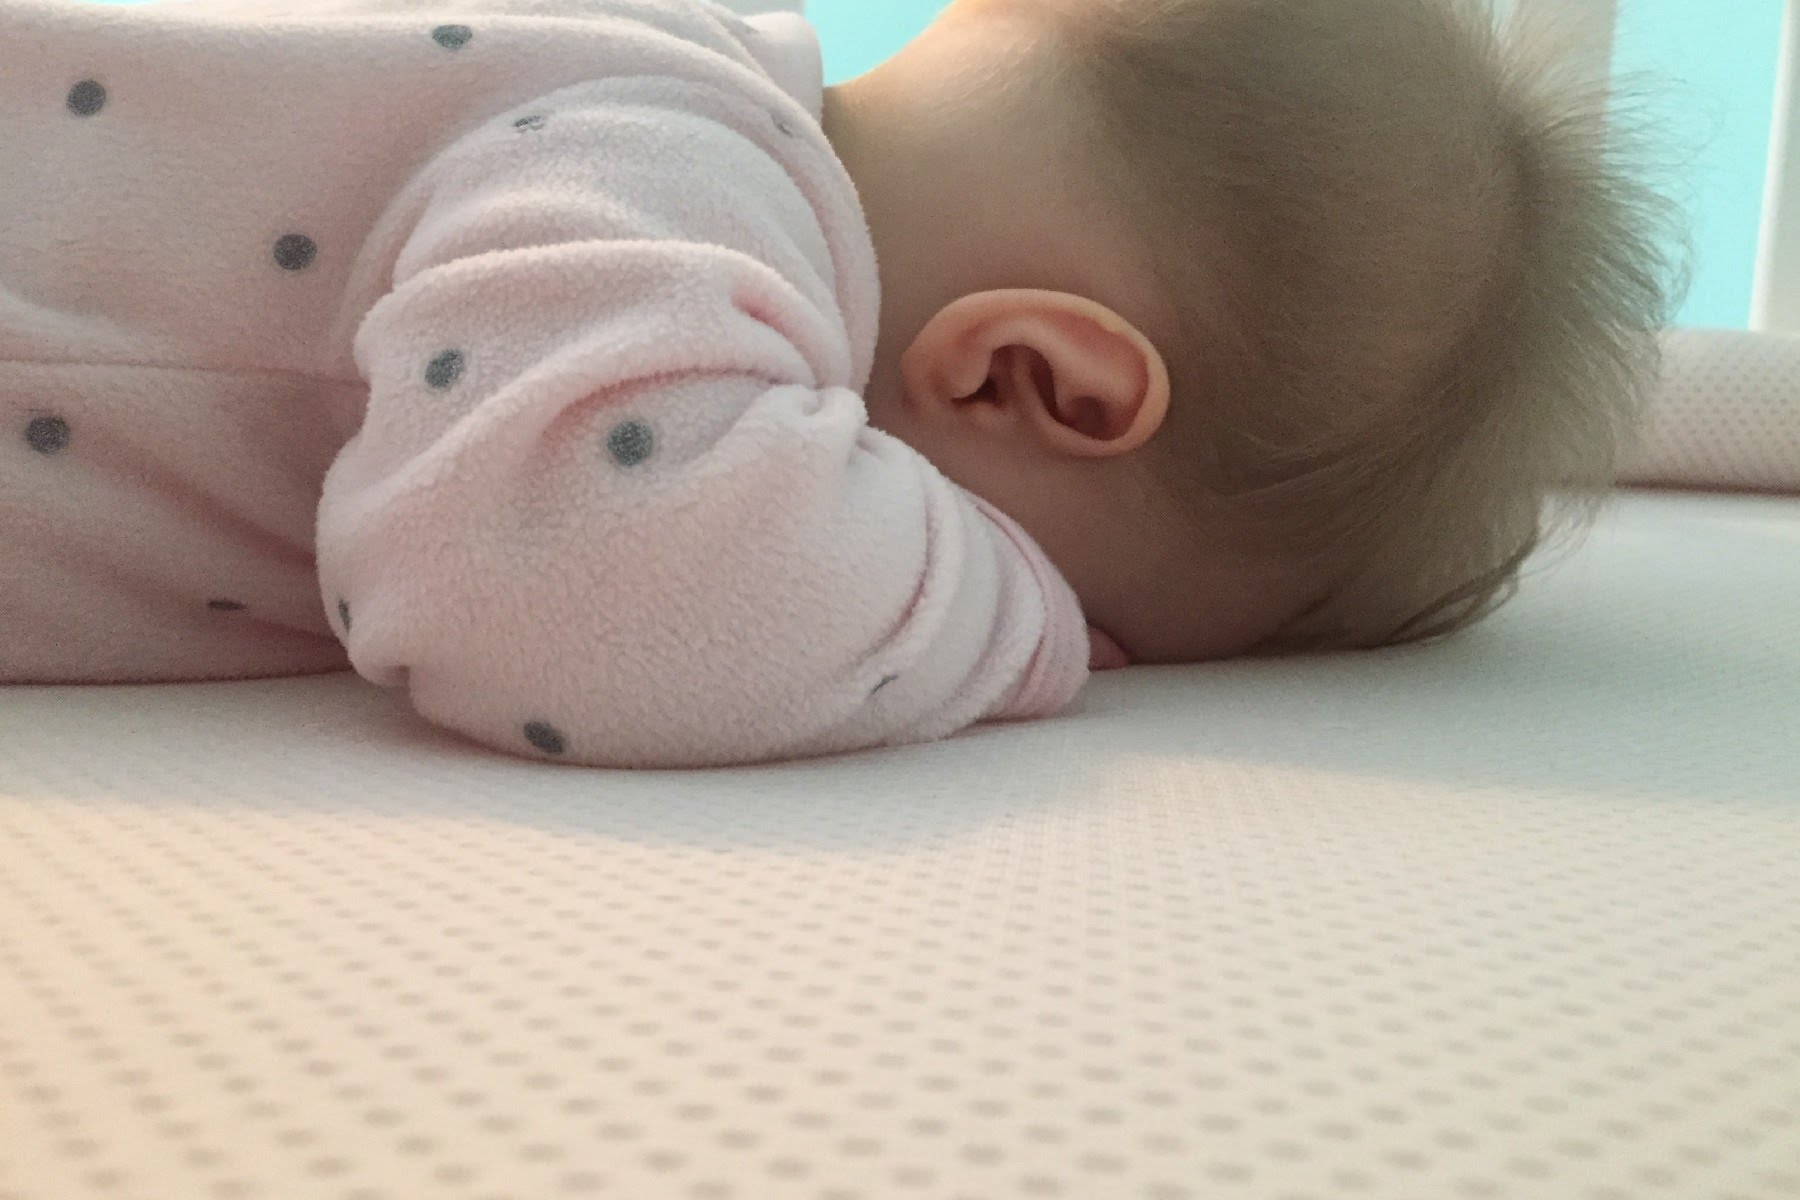 A Sleepy-Kids 8 cm magas hypoallergén kiságy matracunk szabad légutatkat biztosít alvás közben is.